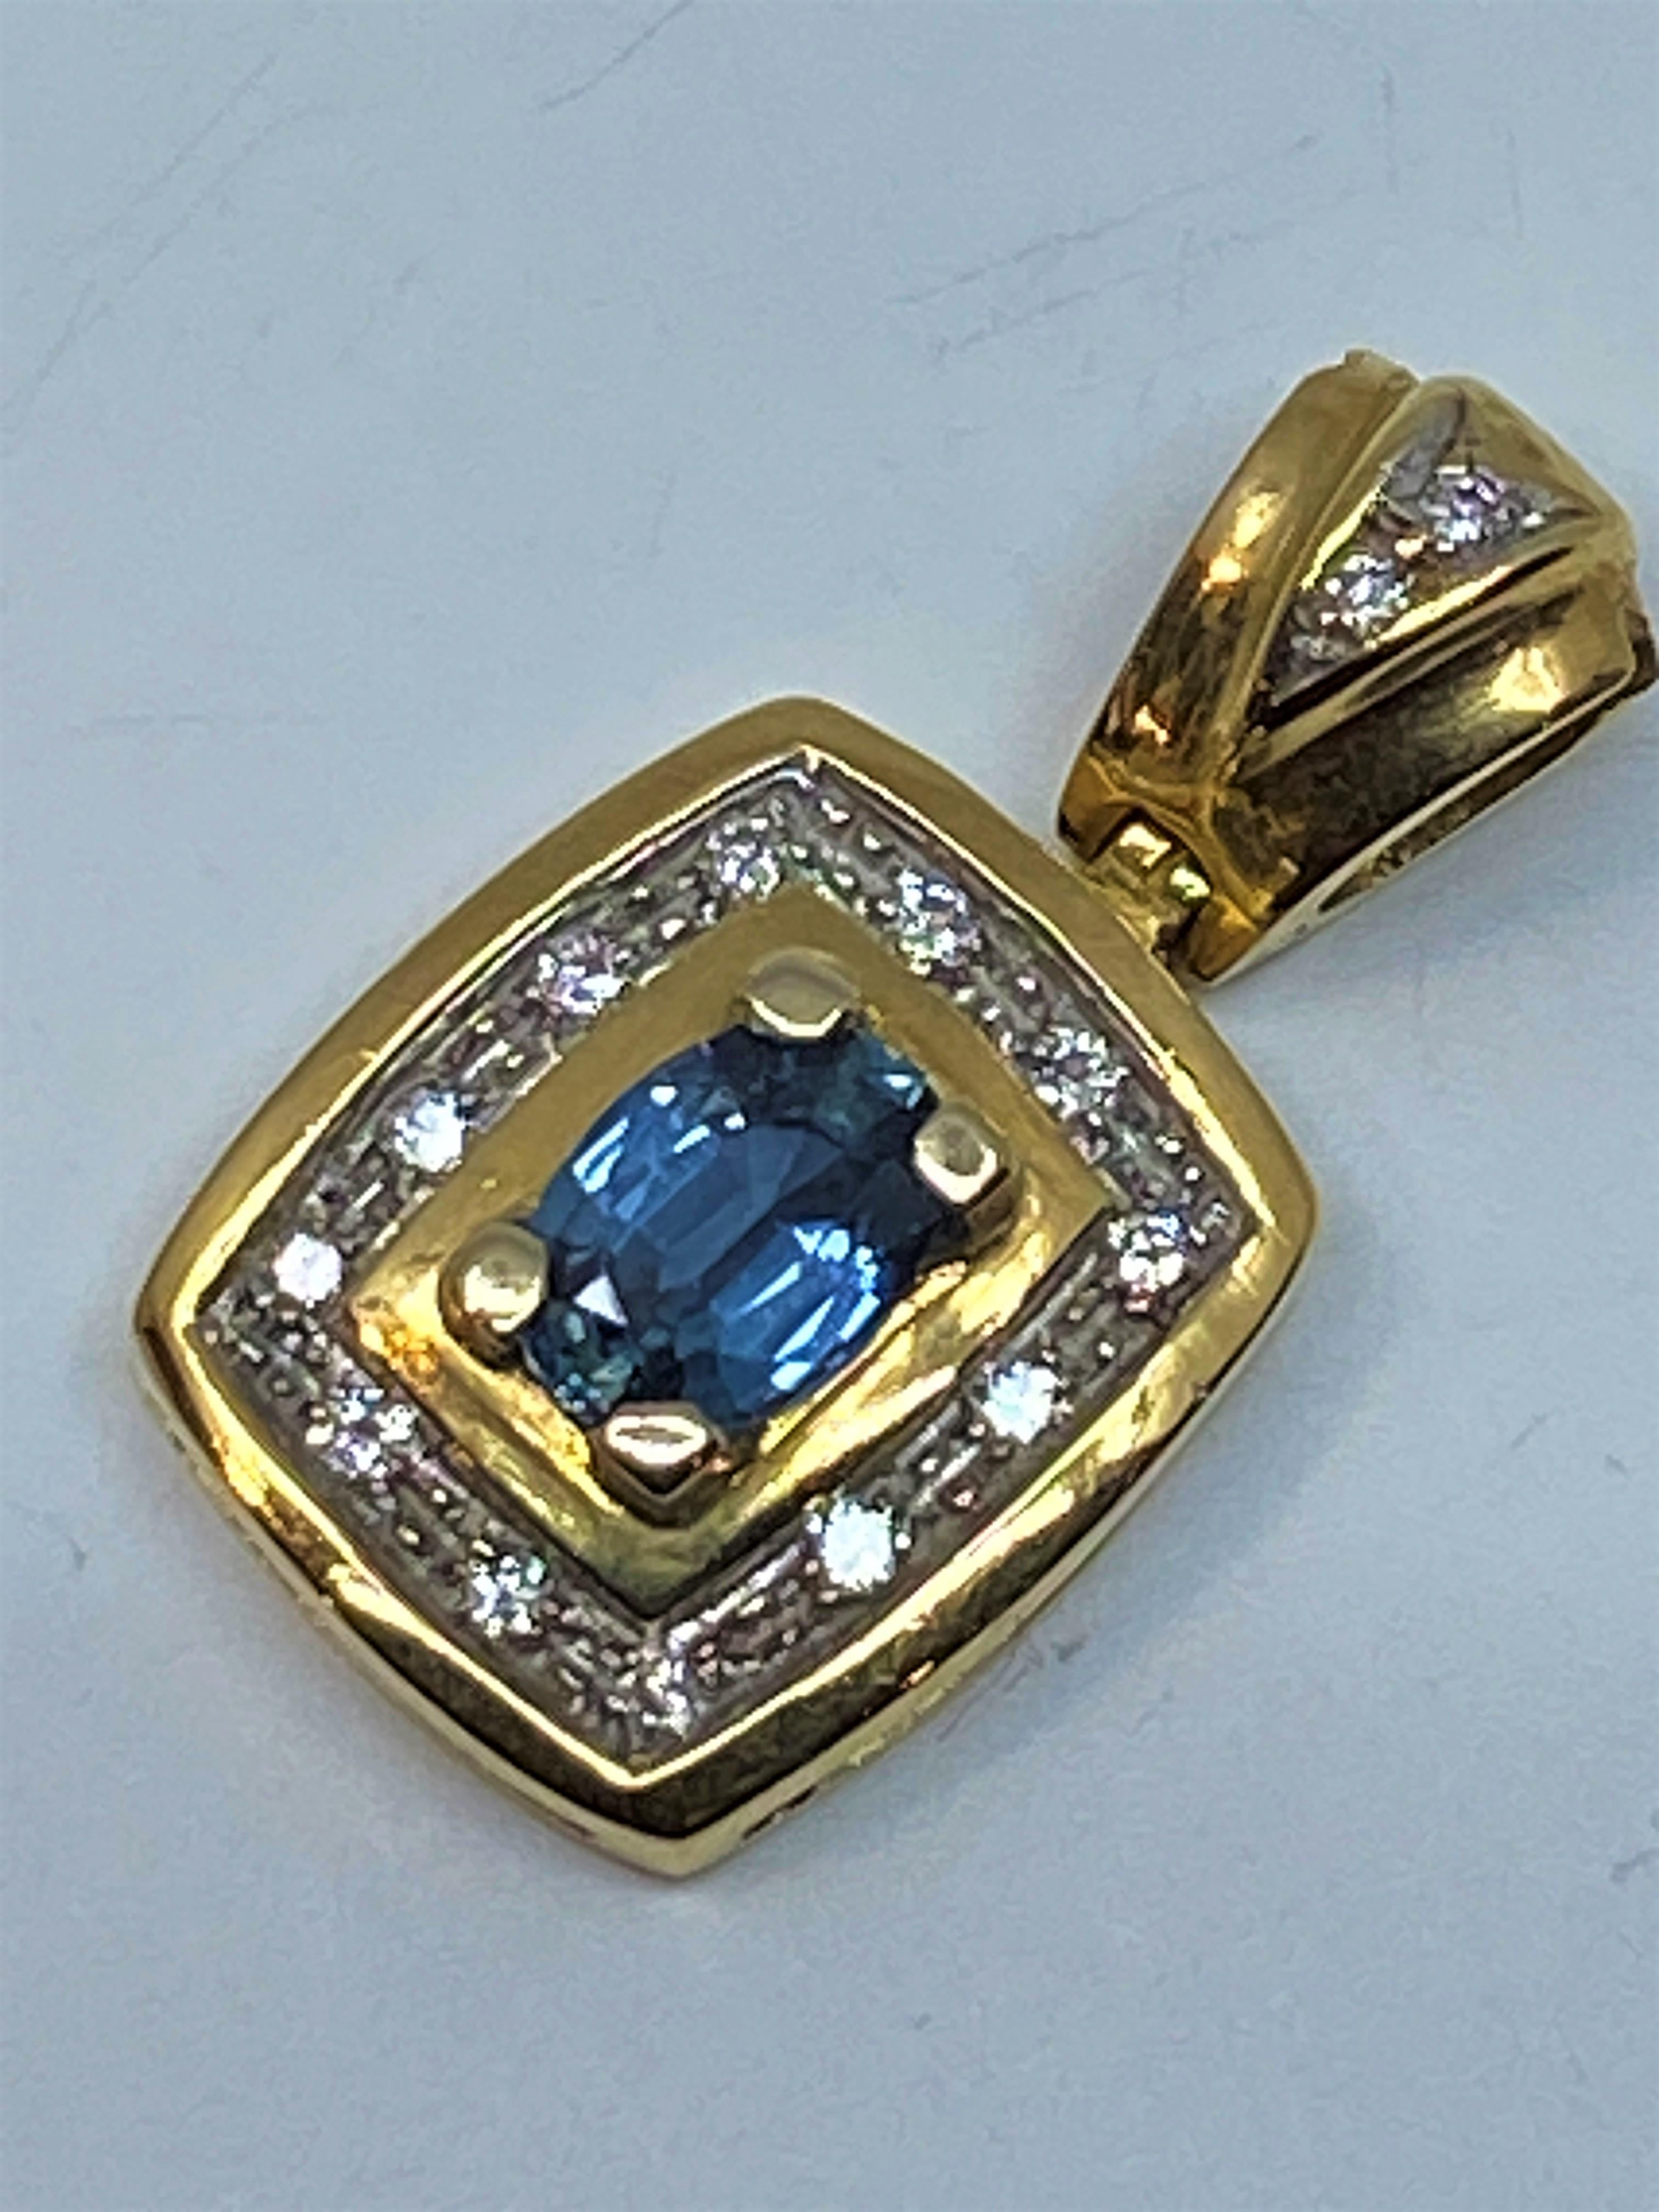 Joli pendentif en or 18 carats orné au centre d’un saphir entouré de 14 diamants. La bélière mobile est sertie de 2 diamants dans un motif triangulaire. Le saphir est serti par 4 griffes et les diamants sont en serti grains, l’ensemble dans un serti